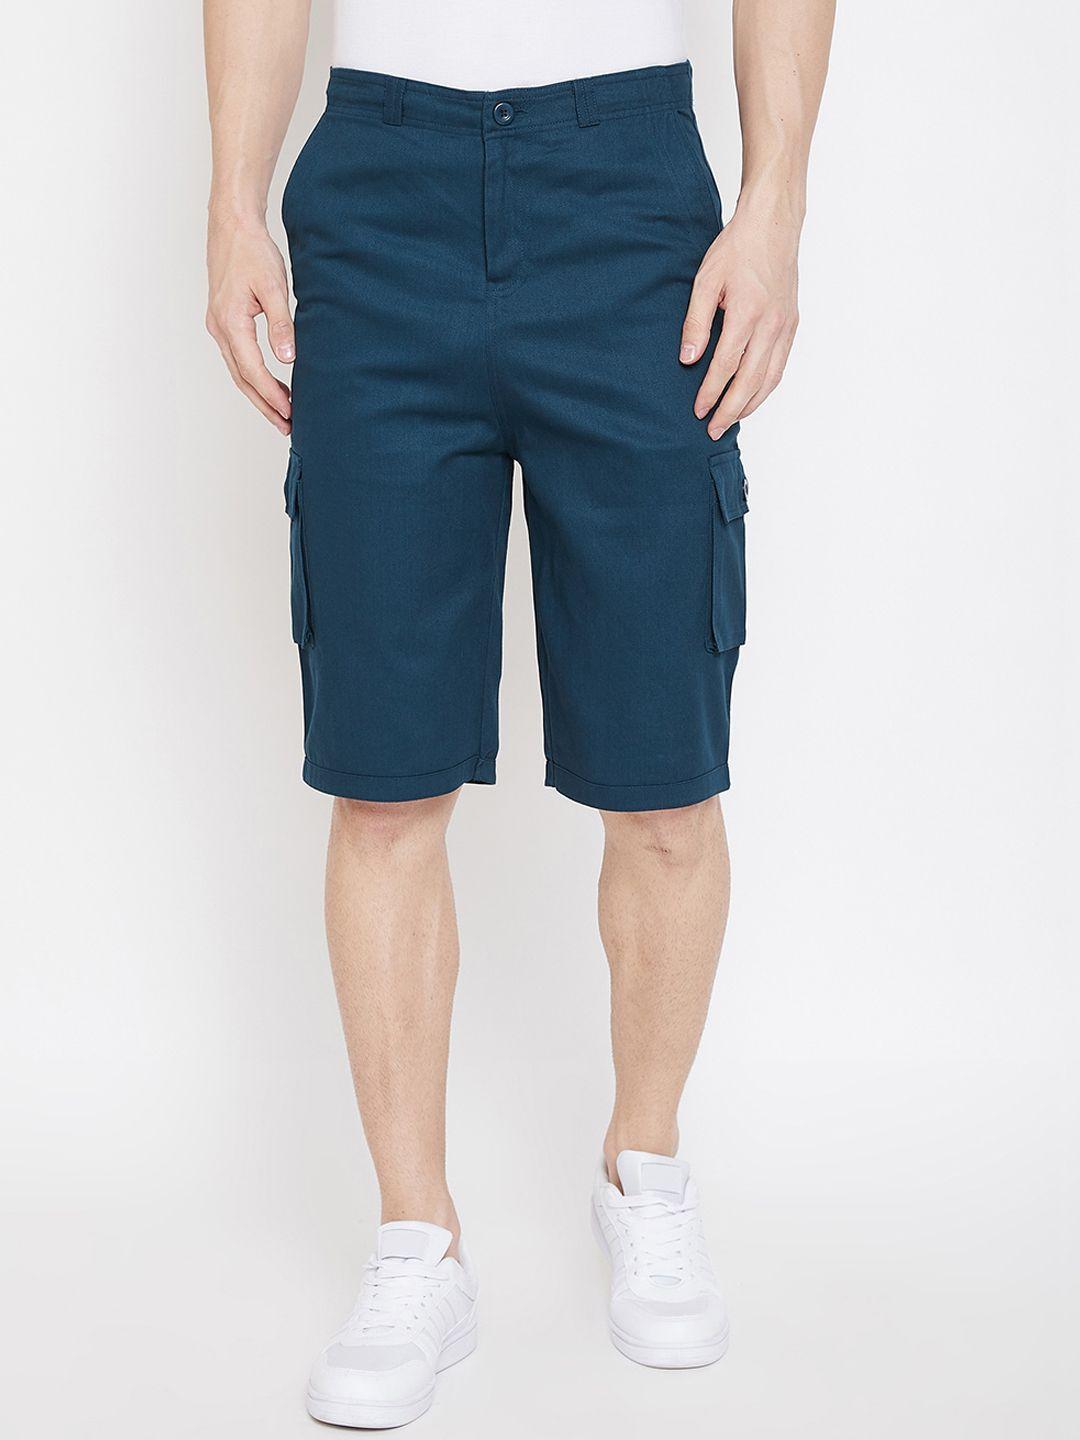 hypernation men teal blue solid regular fit cotton cargo shorts